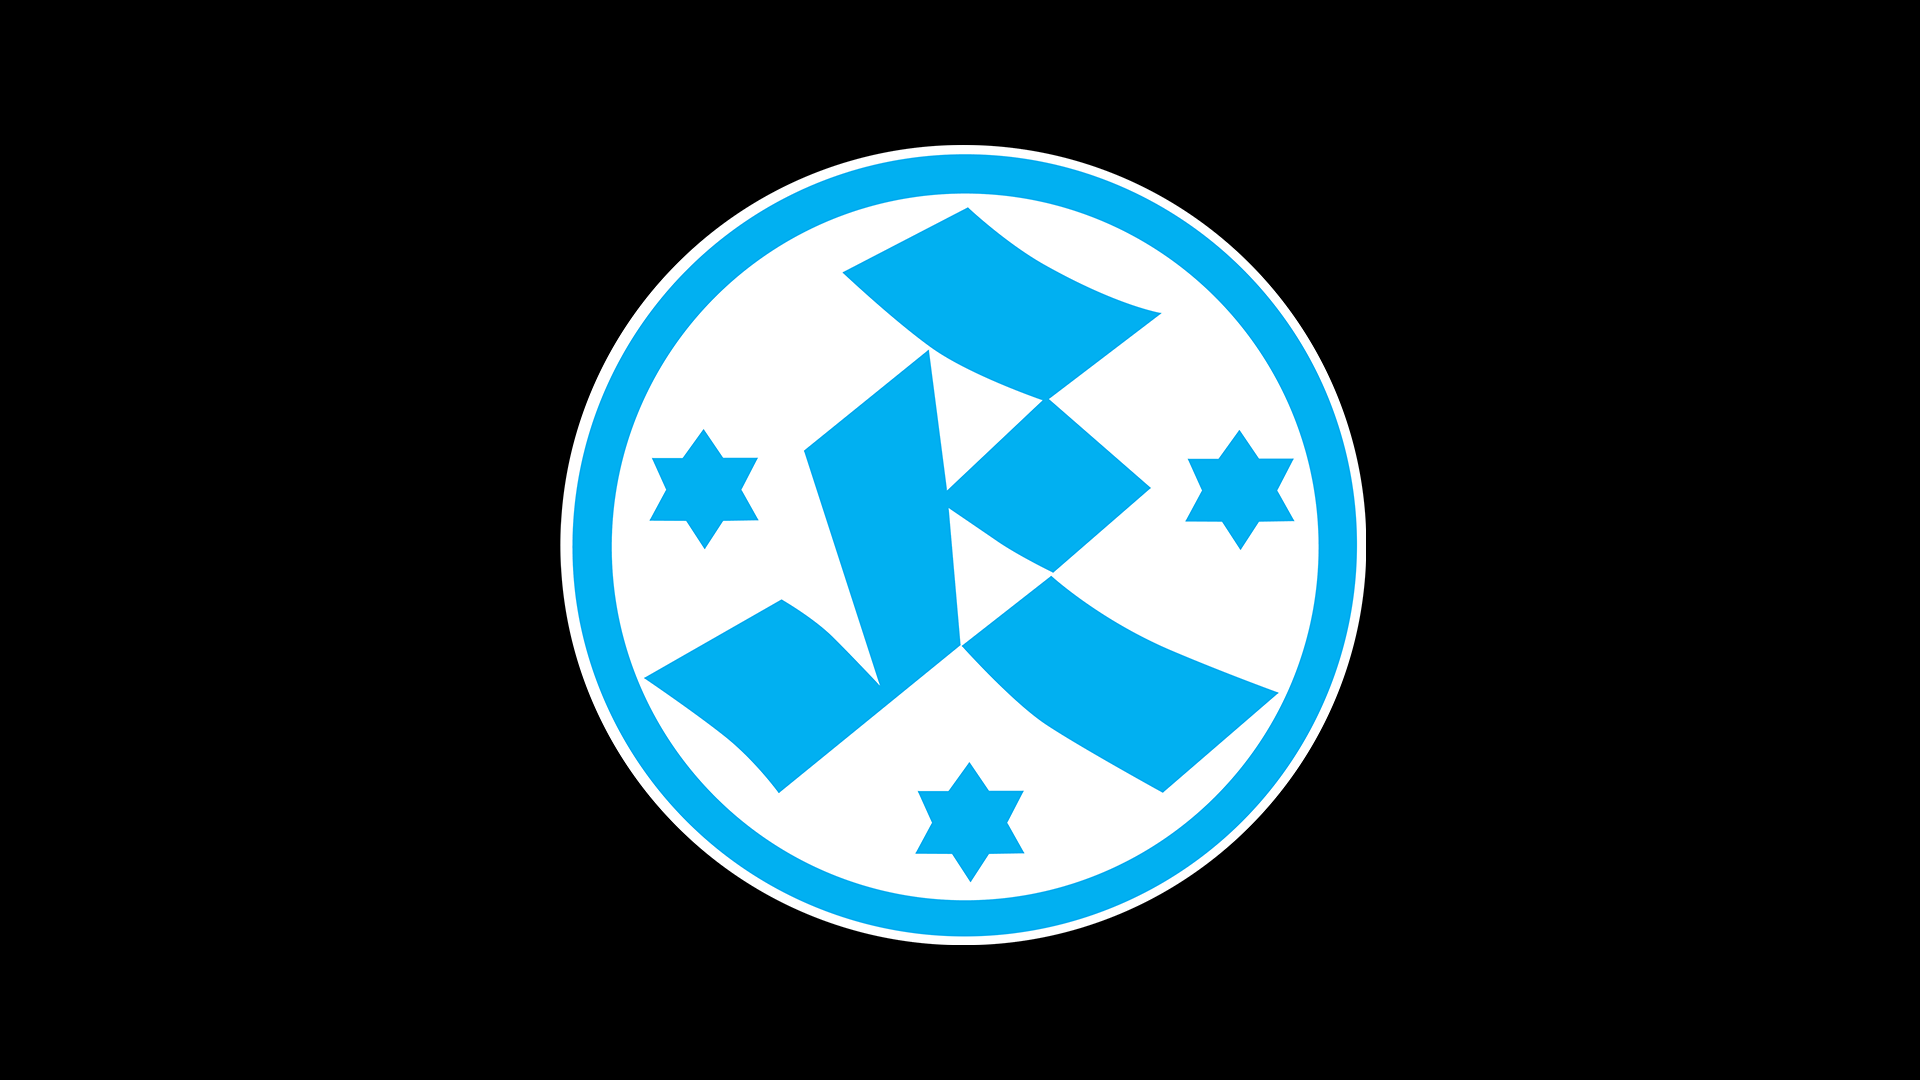 Digitale Mitgliedschaft bei den Stuttgarter Kickers